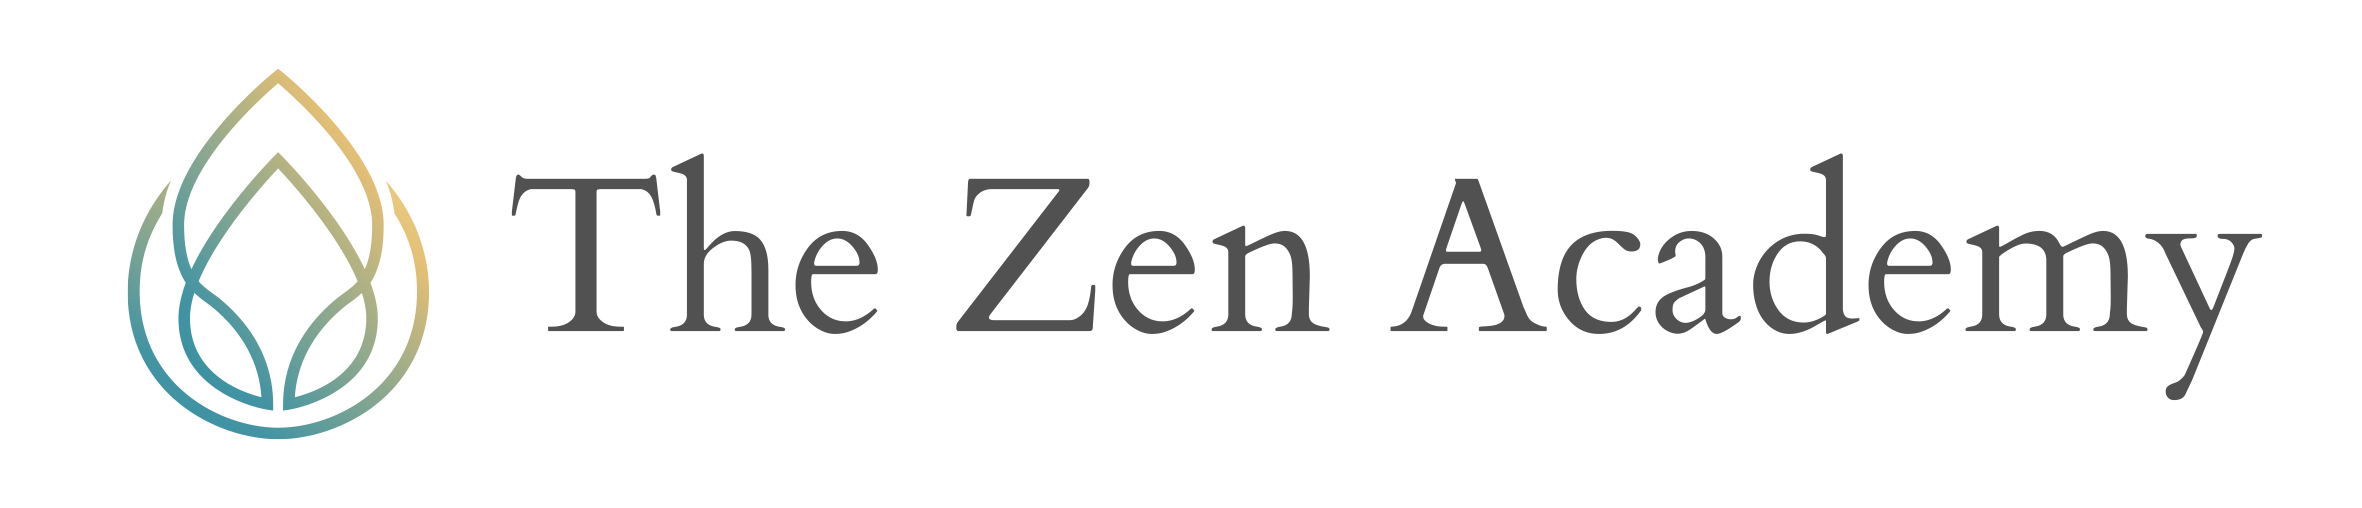 The Zen Academy